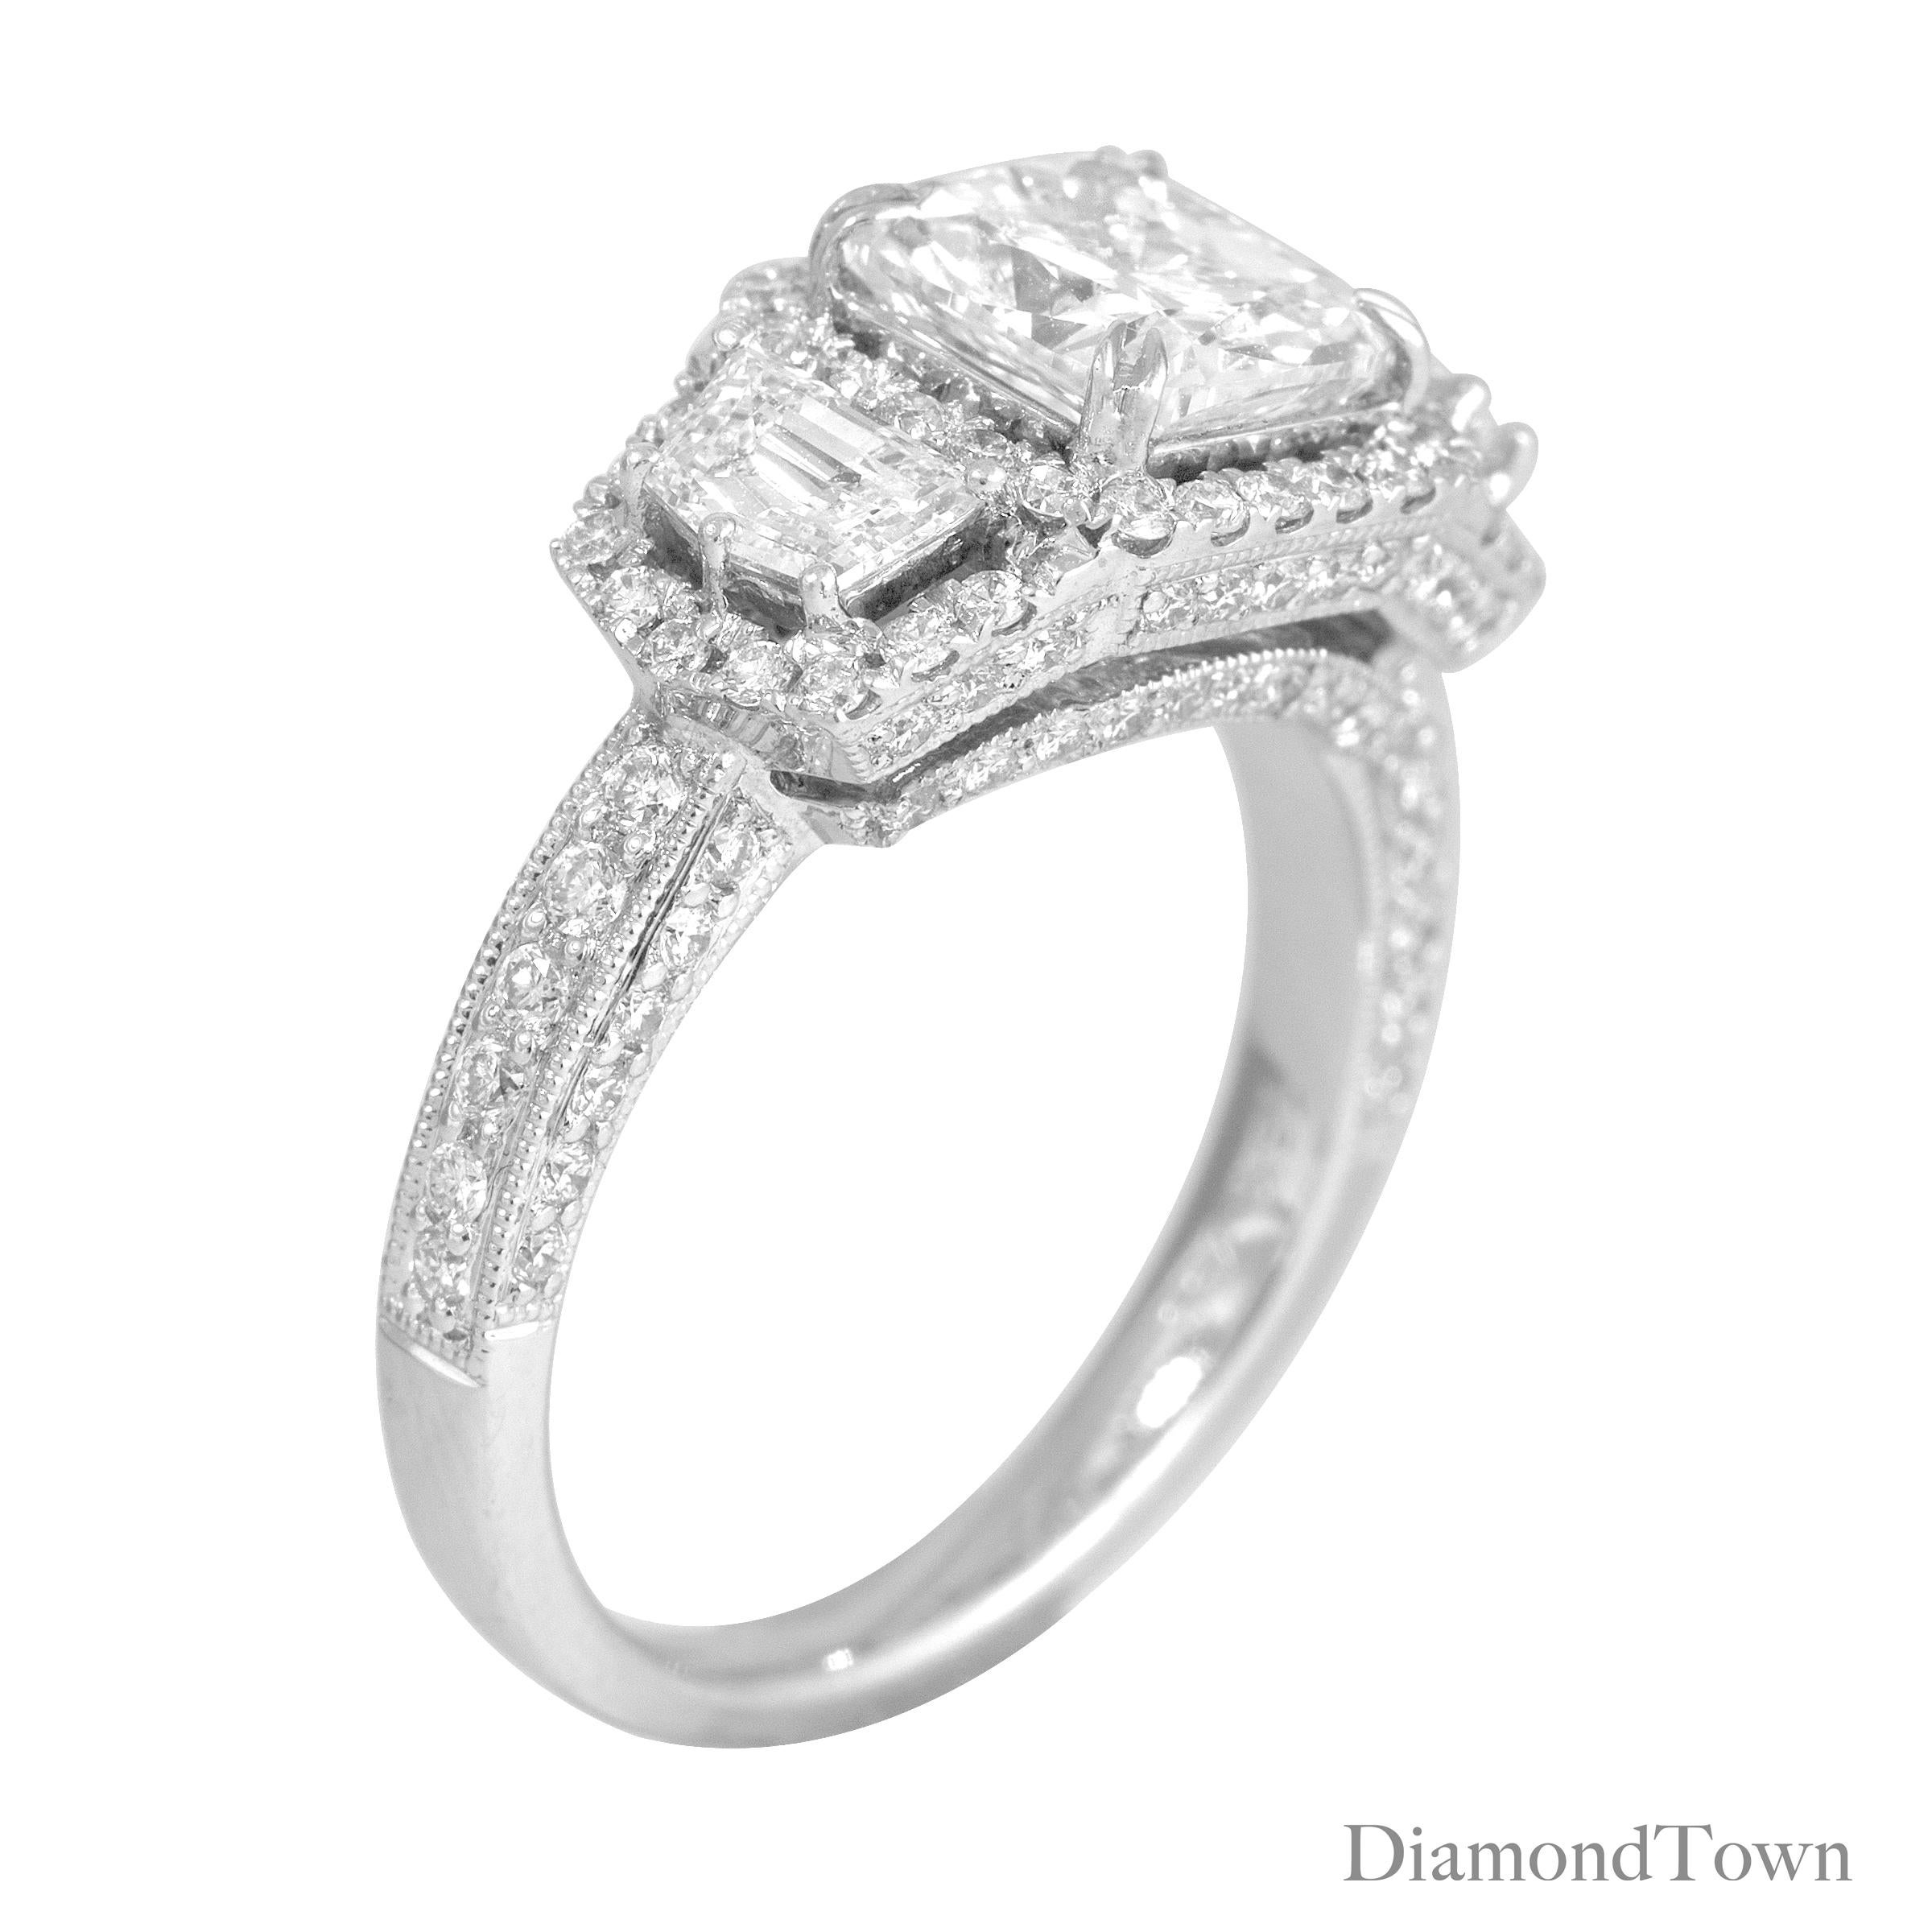 Dieser exquisite, handgefertigte Ring besticht durch einen 1,72 Karat schweren, GIA-zertifizierten Diamanten im Kissenschliff in der Mitte und zwei halbmondförmige Diamanten an den Seiten. Jeder dieser drei Hauptsteine ist von einem Halo aus runden